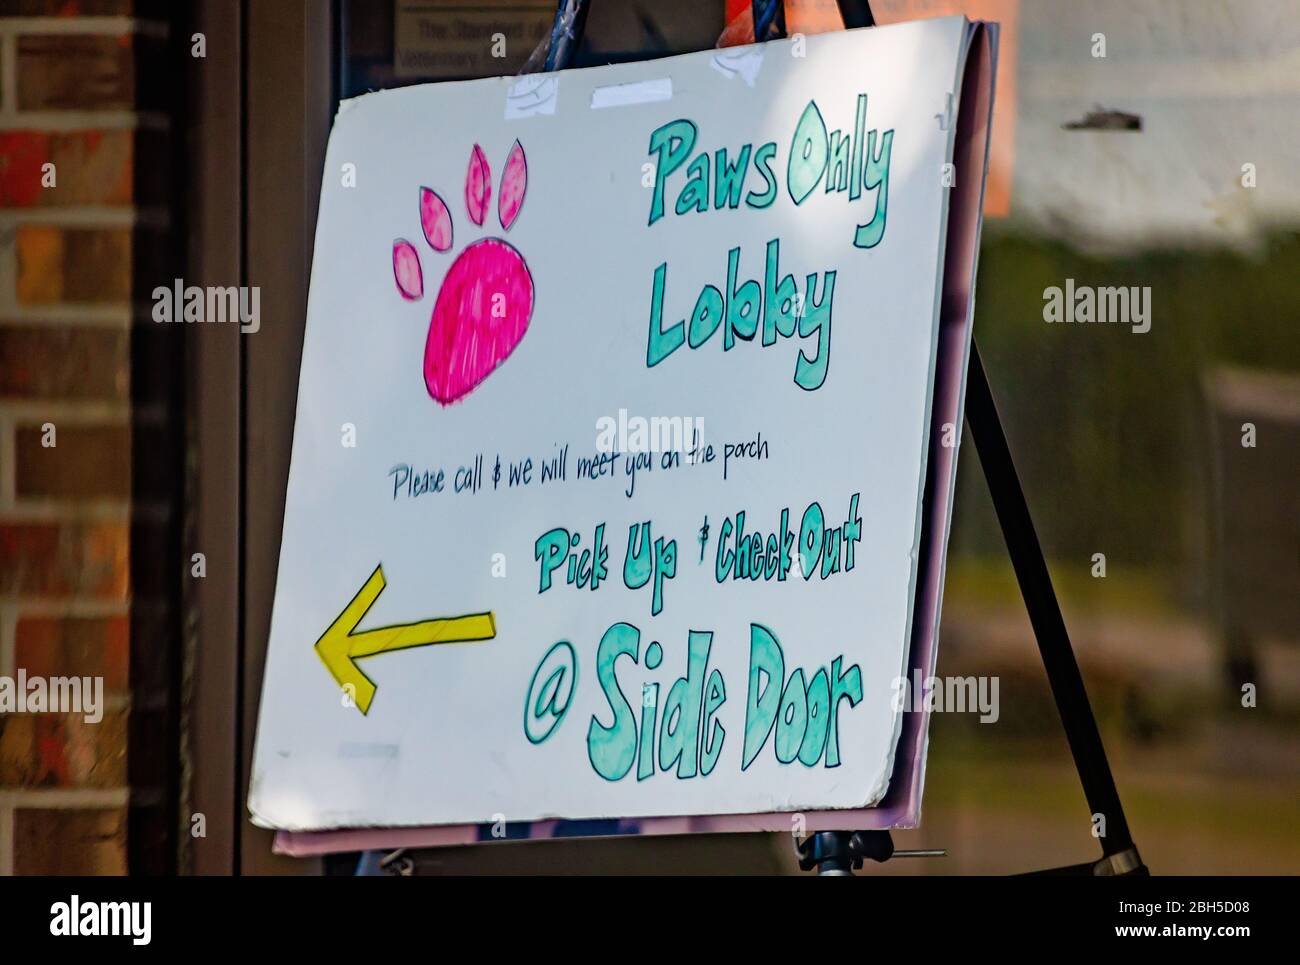 Un panneau à un hôpital local pour animaux annonce son « lobby pour animaux uniquement » lors de la pandémie COVID-19, le 21 avril 2020, à Mobile, Alabama. Banque D'Images